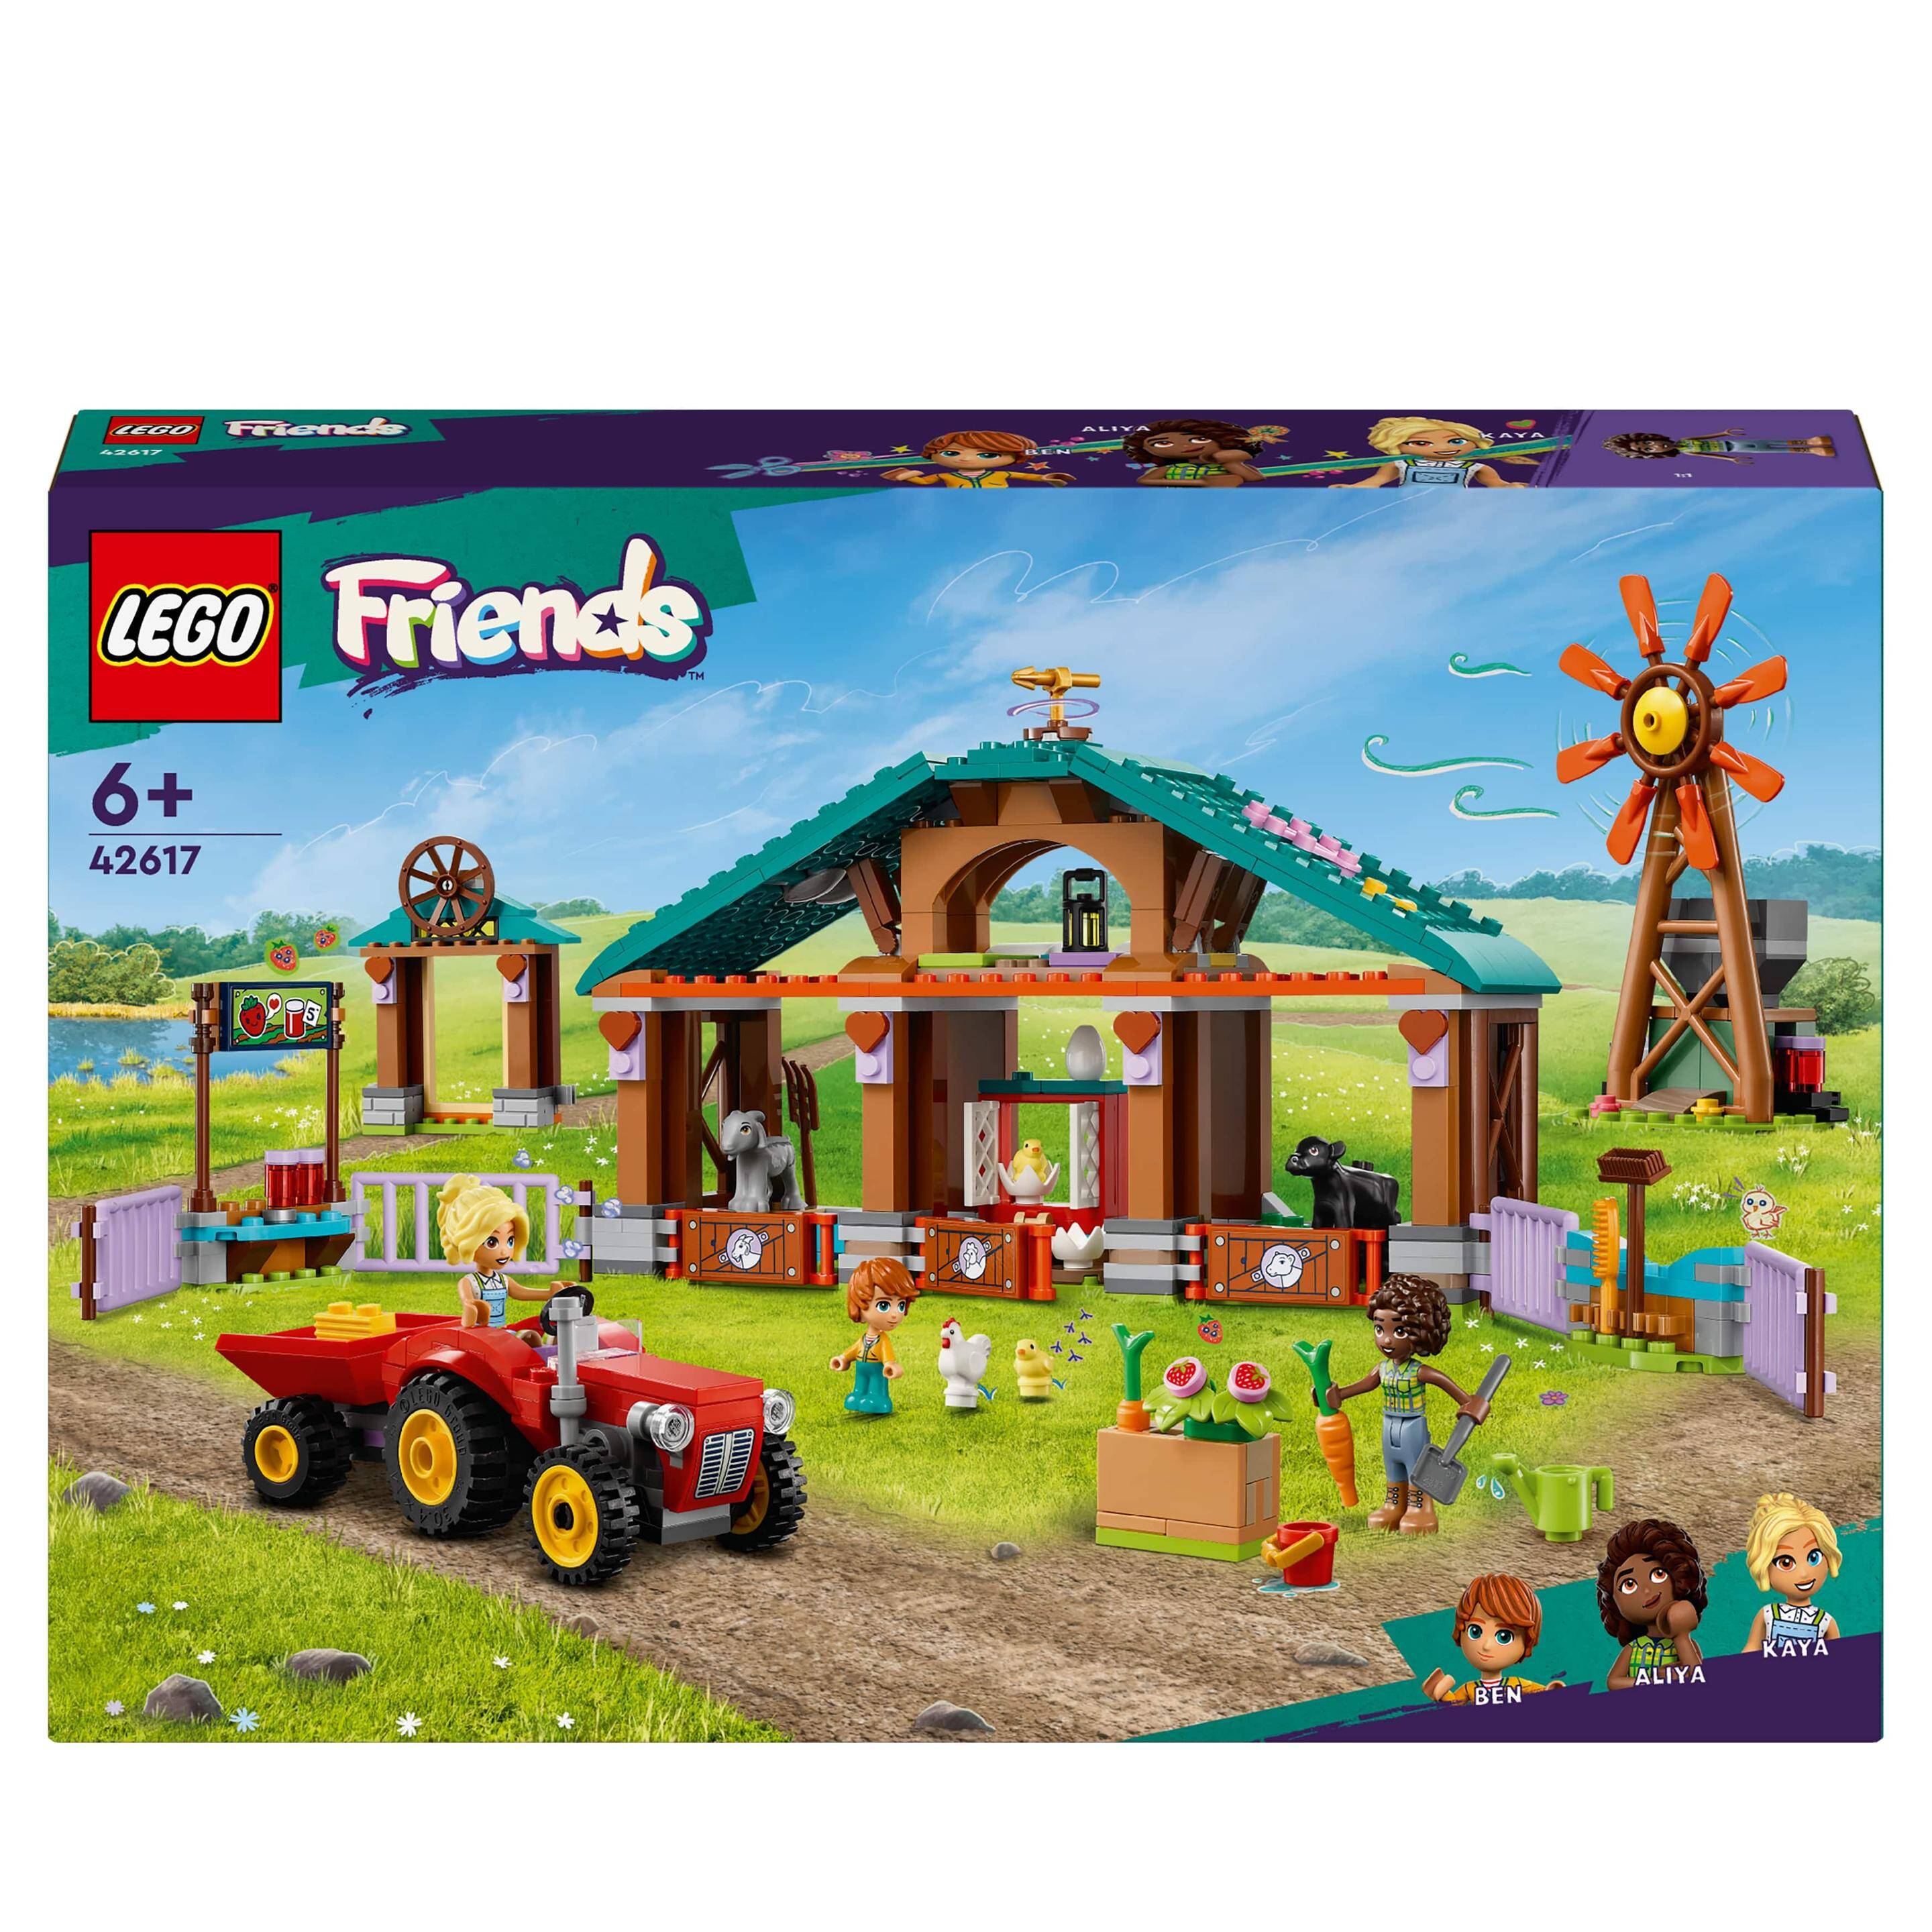 LEGO 42617 FRIENDS Rezerwat zwierząt gospodarskich p4. 489 elemenetów.